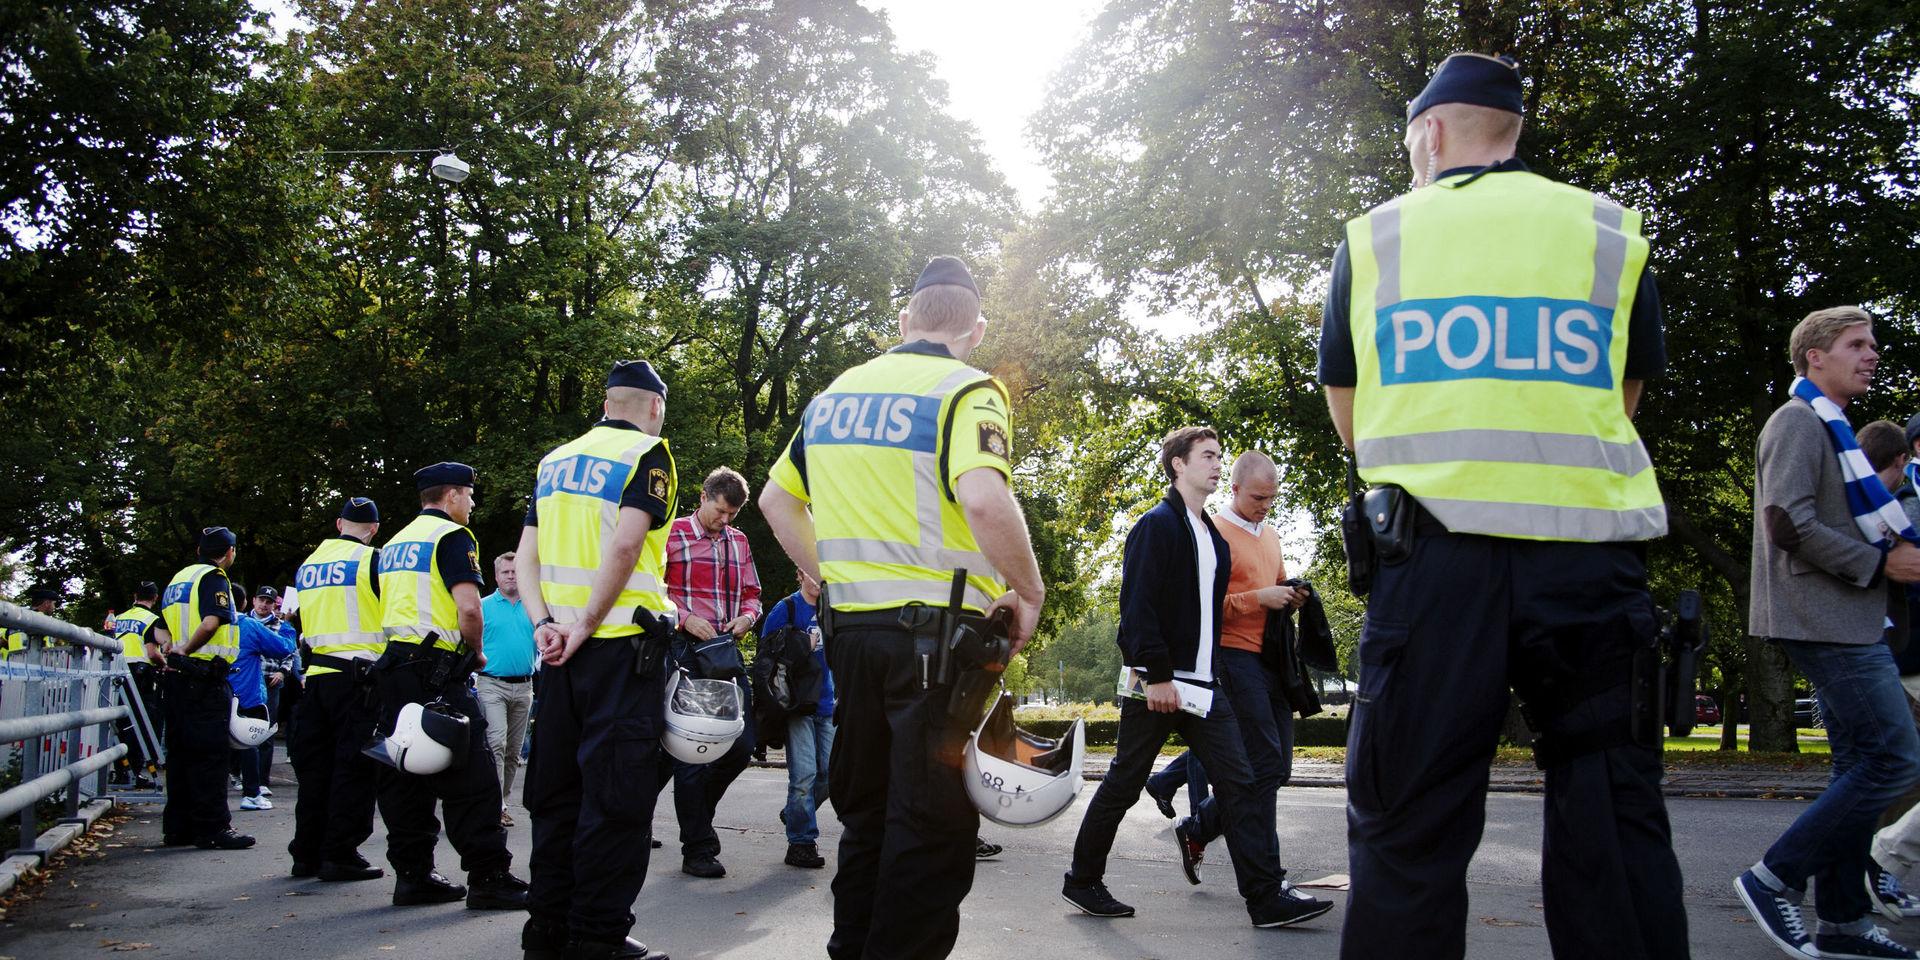 Med anledningen av torsdagskvällens match mellan Göteborg IFK och Malmö FF har polisen avsatt särskilda resurser för att upprätthålla ordning och säkerhet.